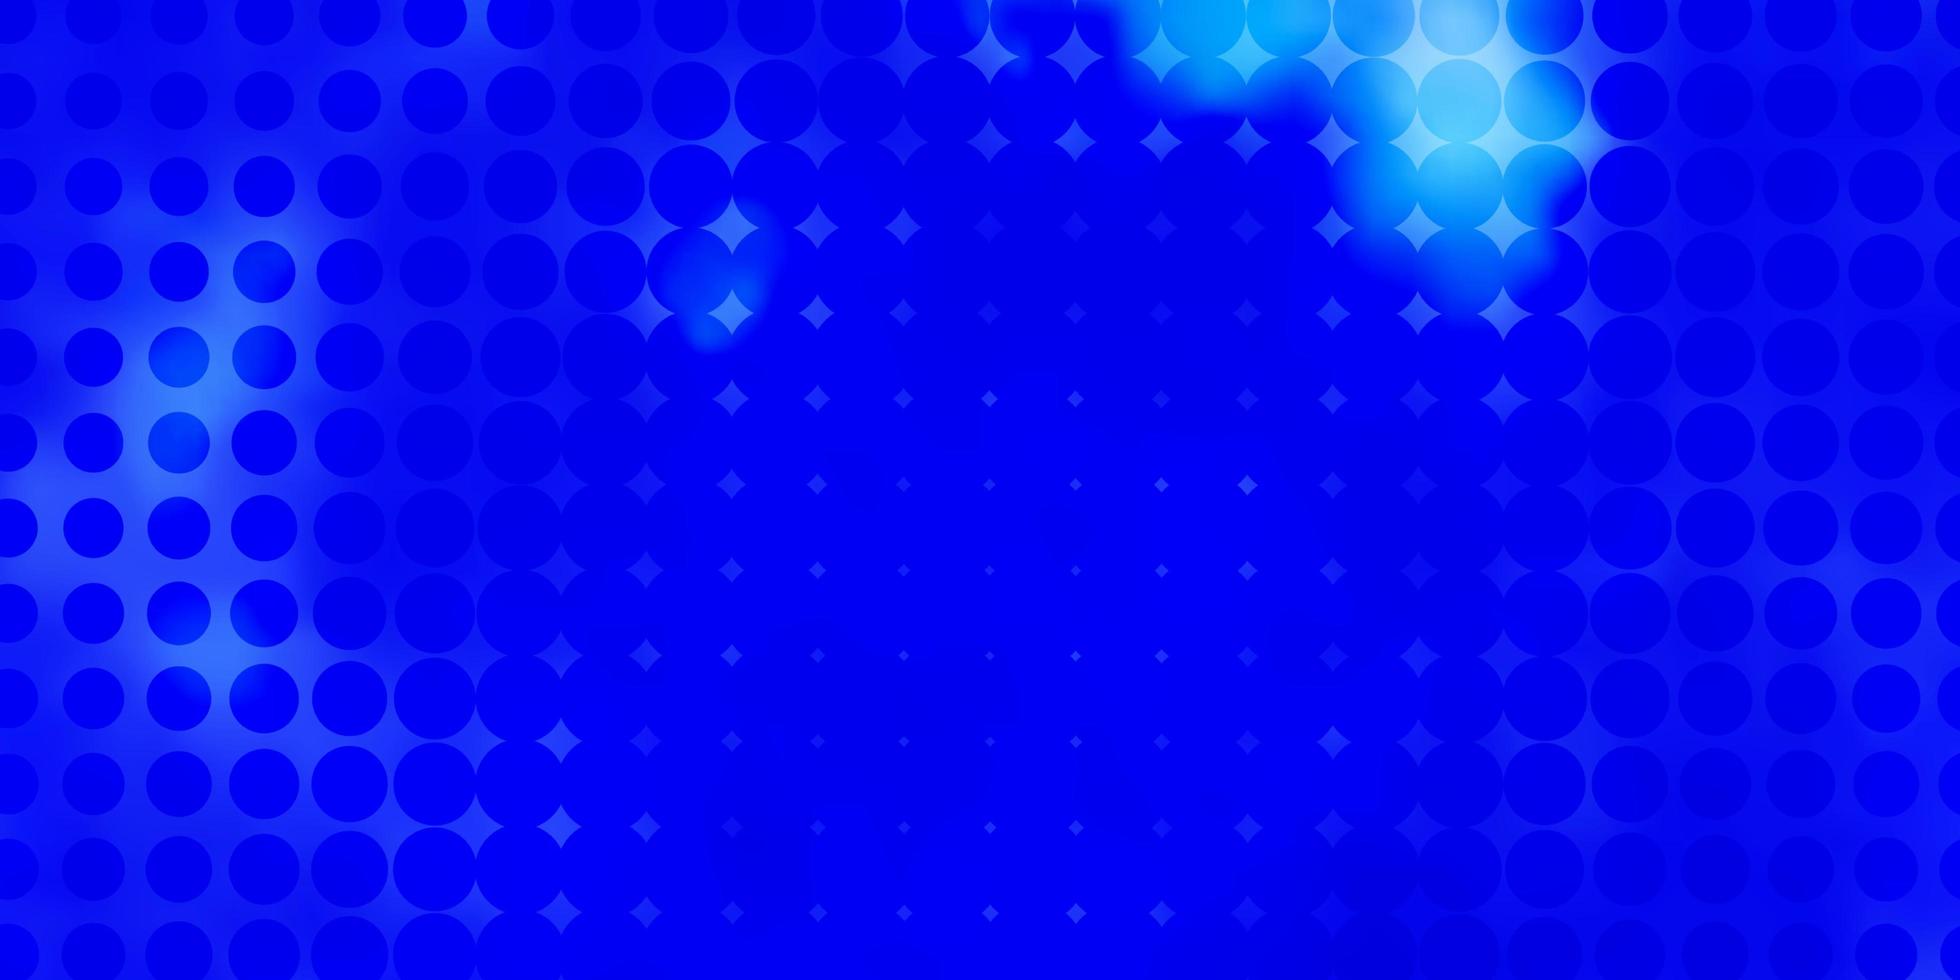 ljusblå vektorbakgrund med cirklar abstrakt illustration med färgglada fläckar i naturstilmönster för webbplatsers målsidor vektor